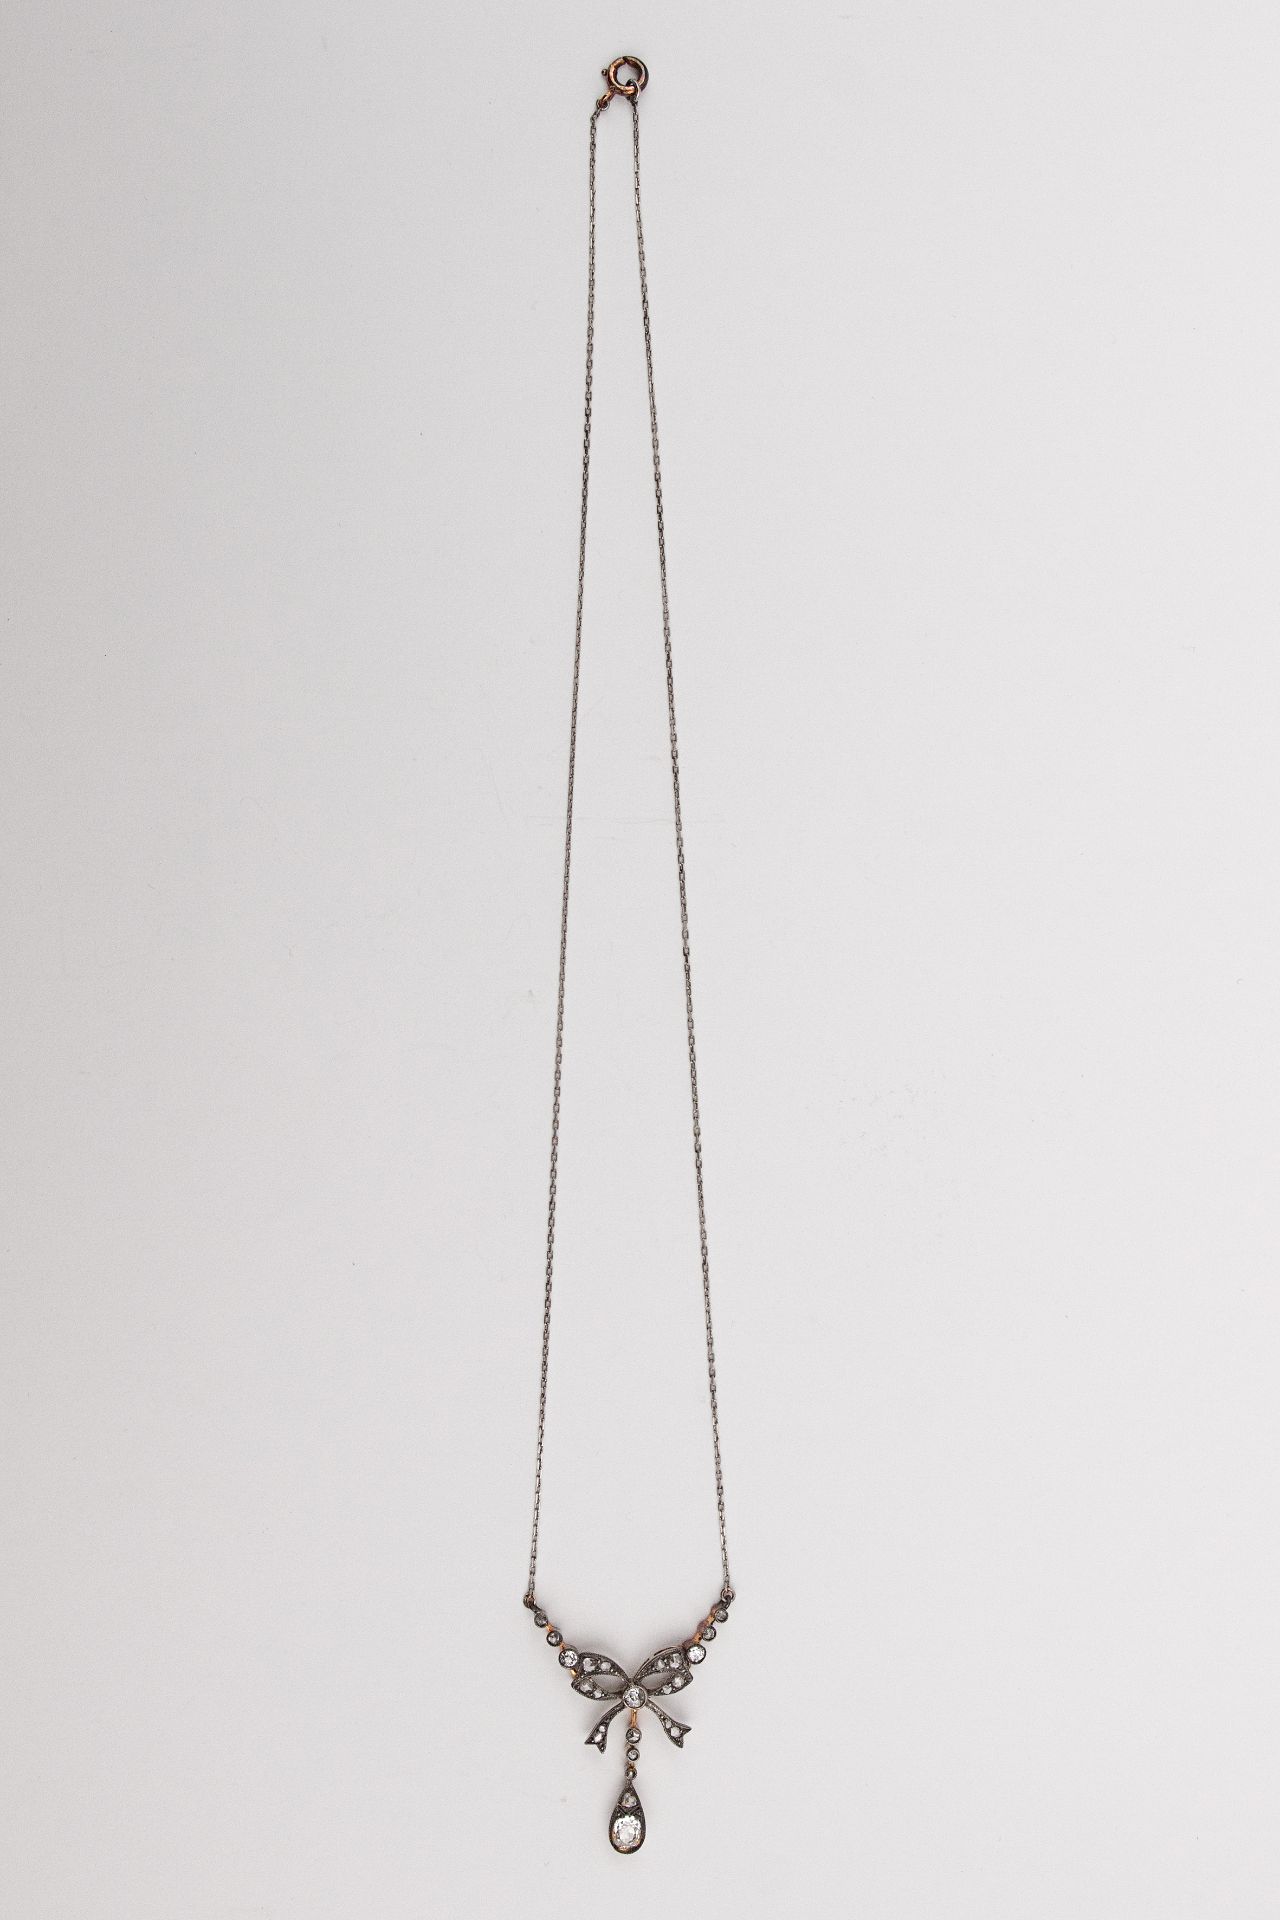 A Belle Époque pendant and chain circa 1895